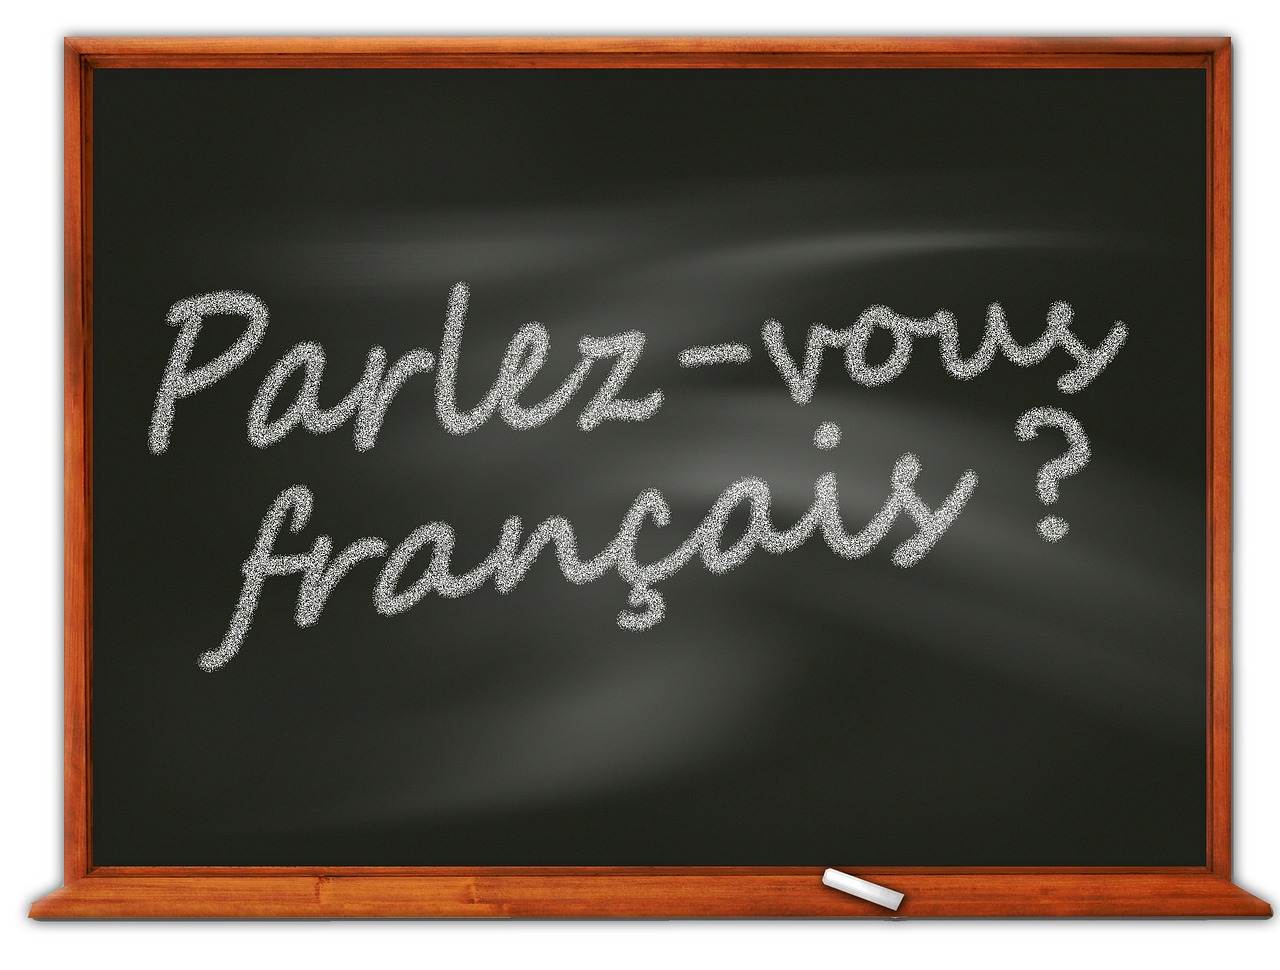 blackboard saying parlez vous francais?